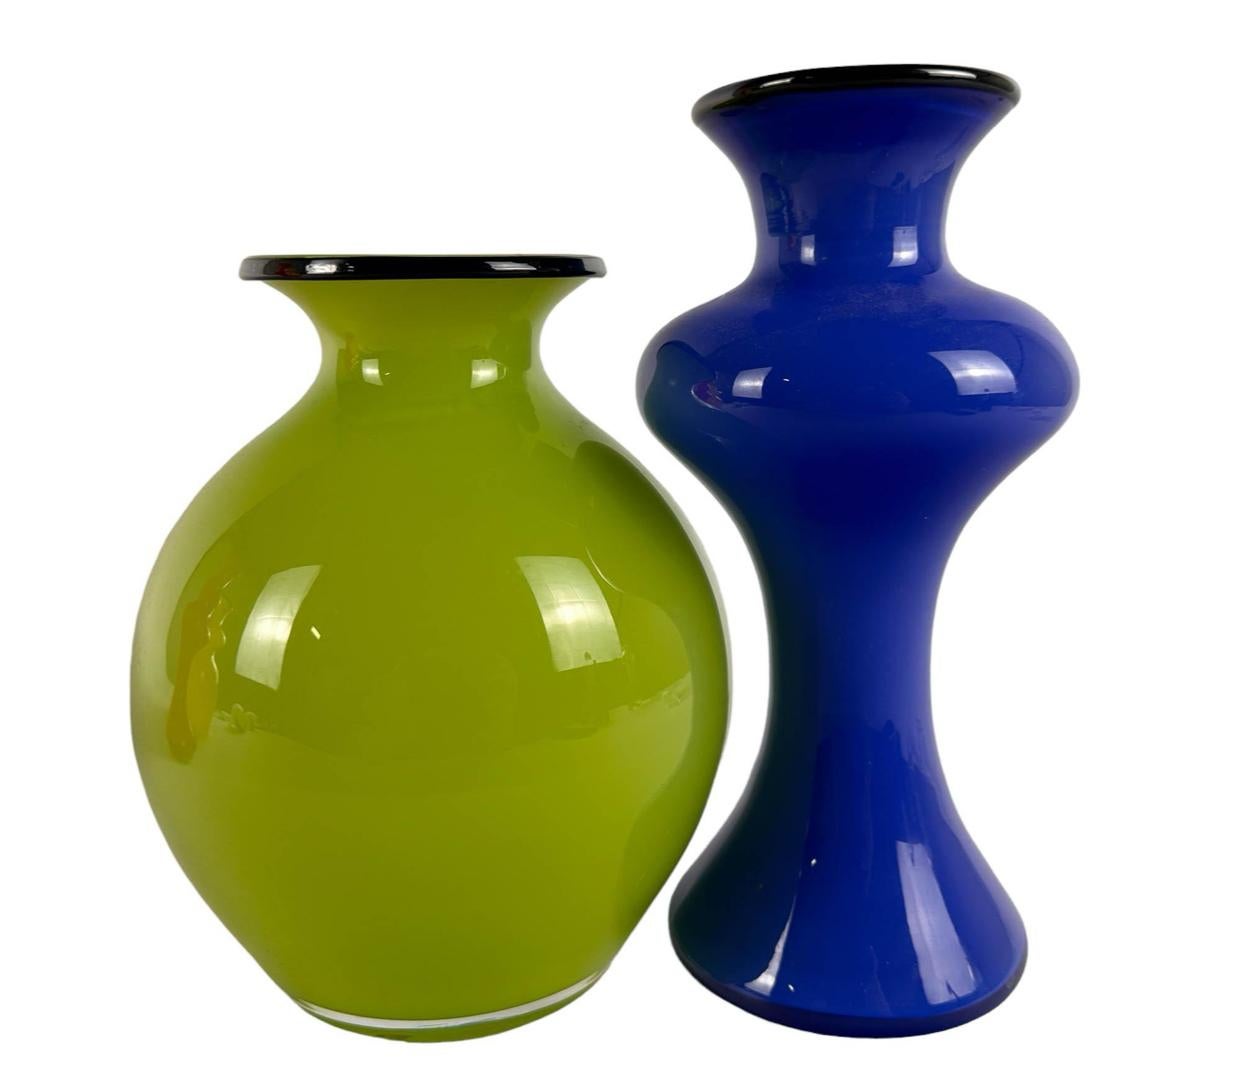 Colección de cuatro decantadores vintage de vidrio artístico del estudio de diseño sueco Strombergshyttan. Los colores incluyen: vidrio amarillo intenso, verde, azul y rojo, cada uno con un anillo de vidrio negro alrededor del labio superior. Sólo